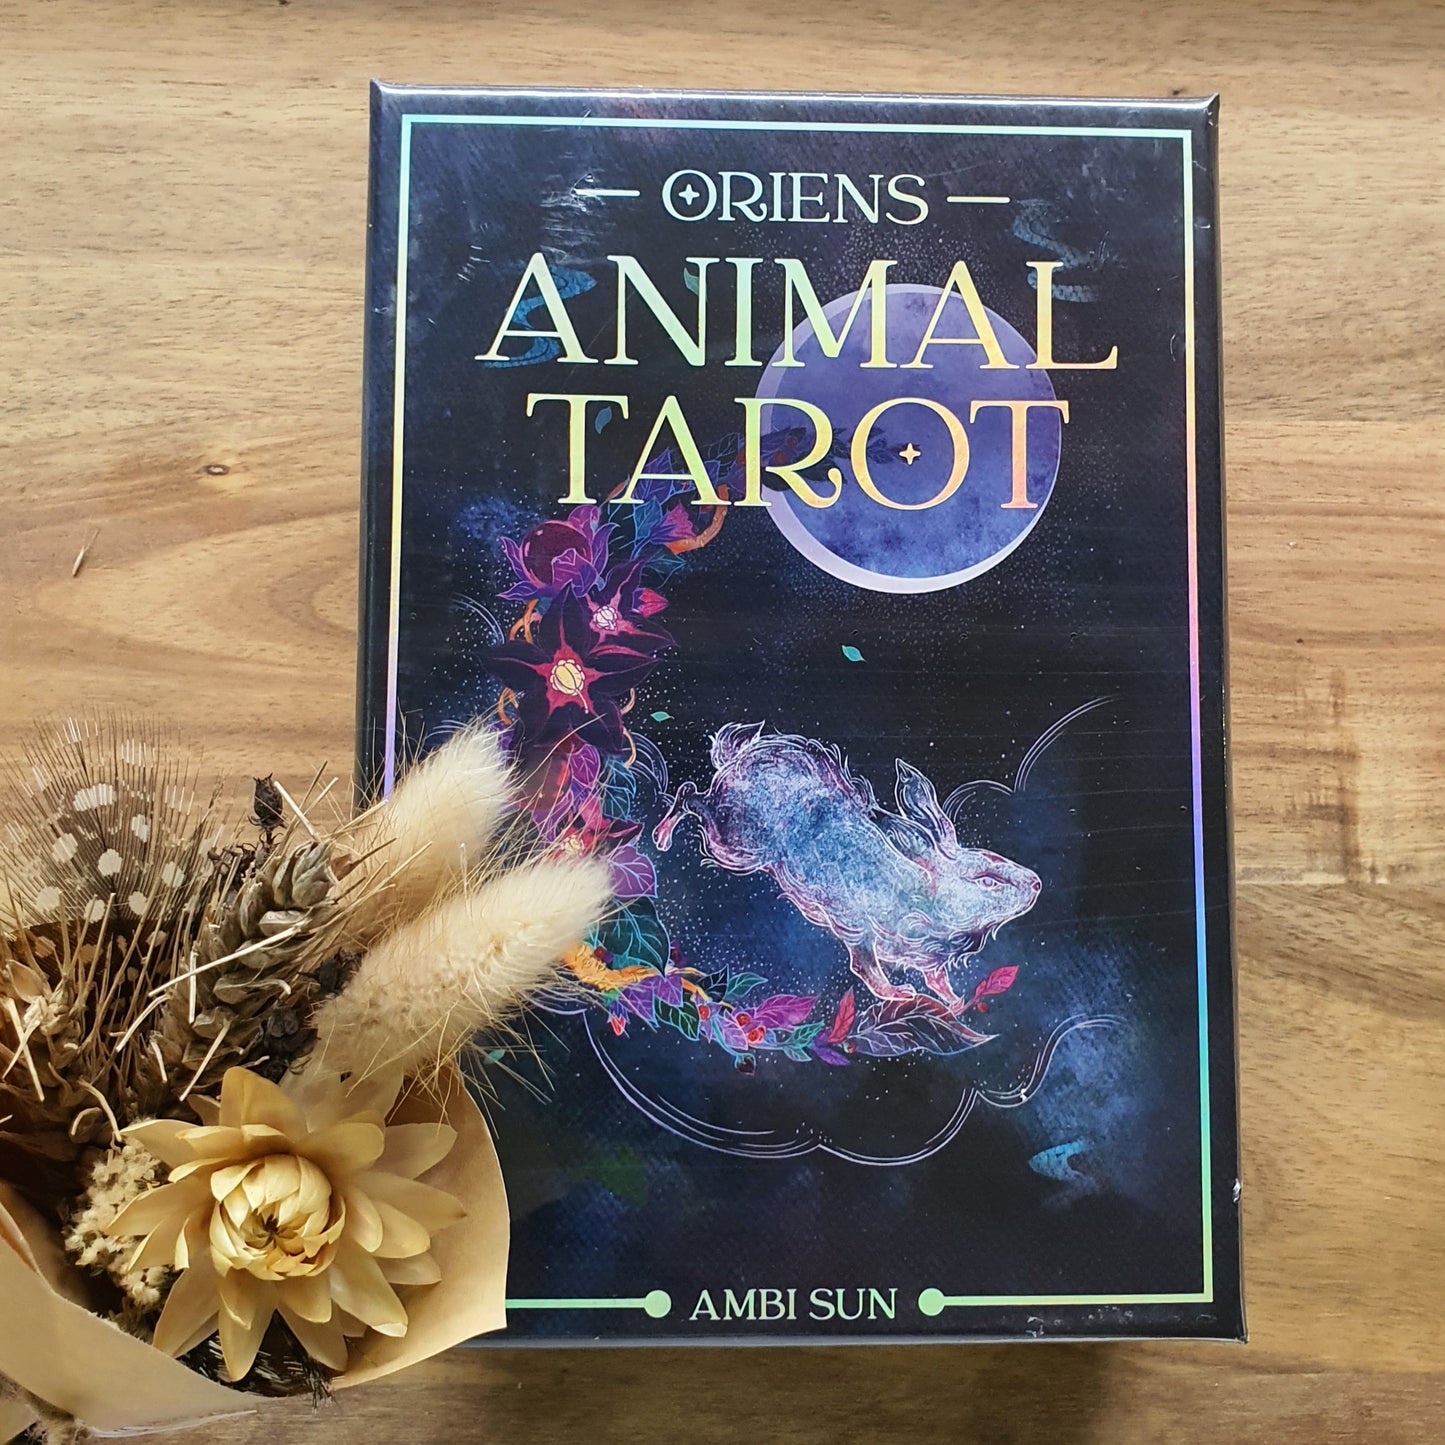 Orien's Animal Tarot